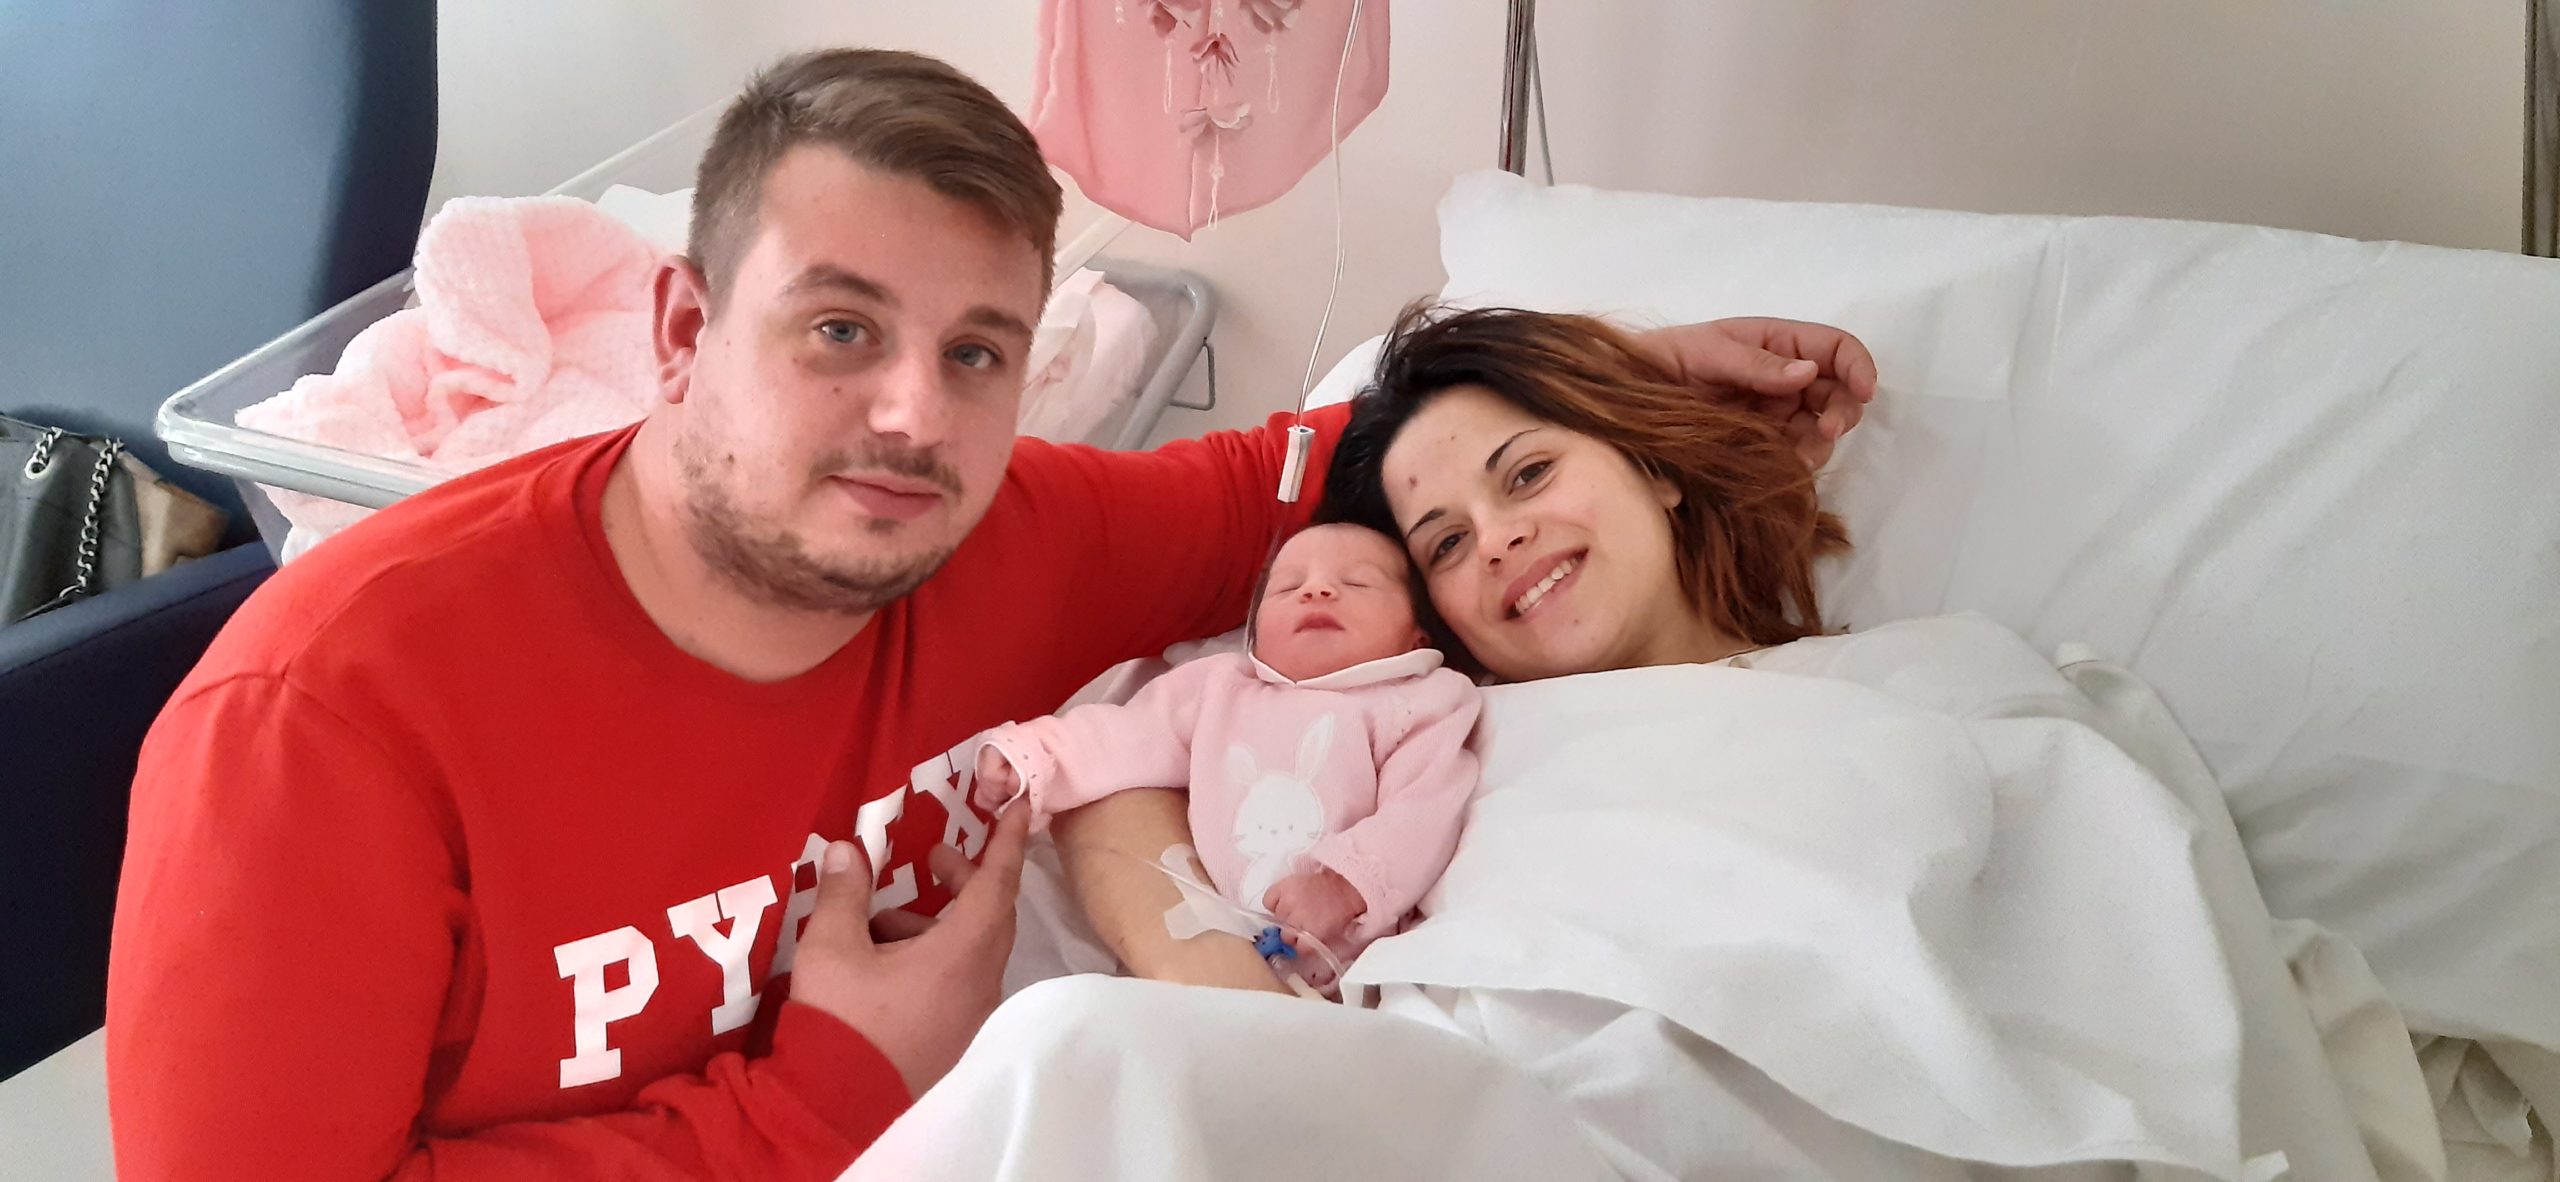 Giuseppina è la prima bimba nata a Siracusa nel 2020: venuta alla luce due ore dopo la mezzanotte